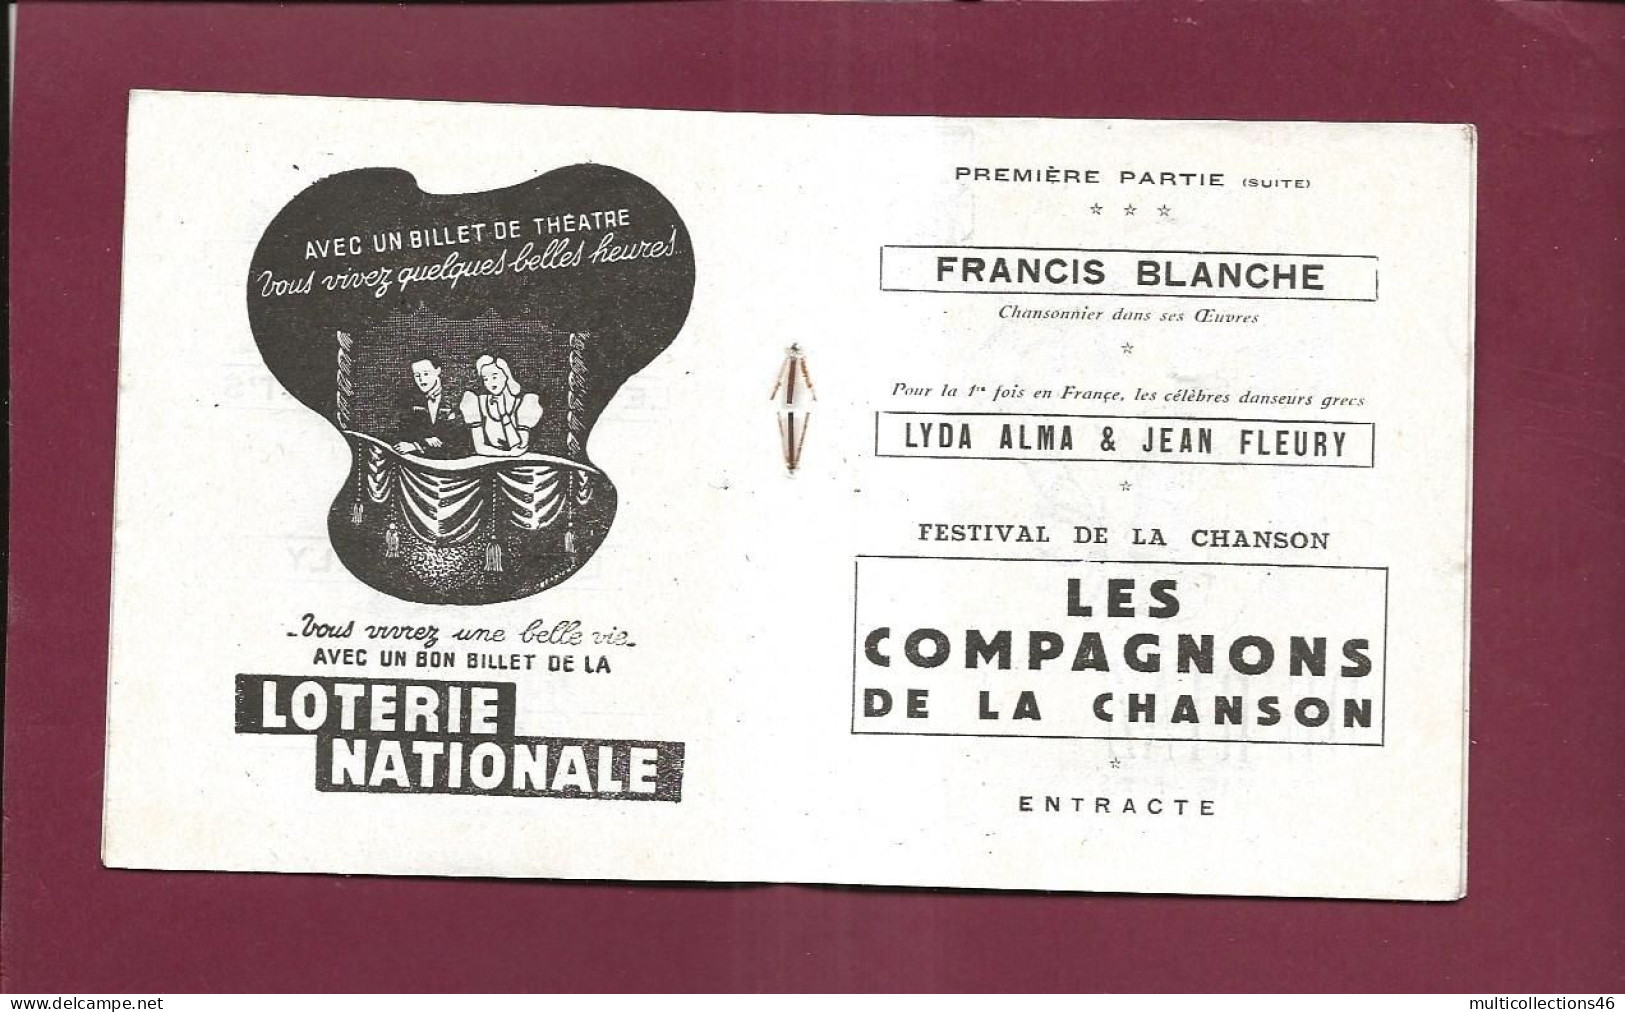 150524 - PROGRAMME THEATRE DE L'ETOILE Music Hall + Billets - Edith Piaf Compagnons De La Chanson Alma Fleury Danse - Programmes